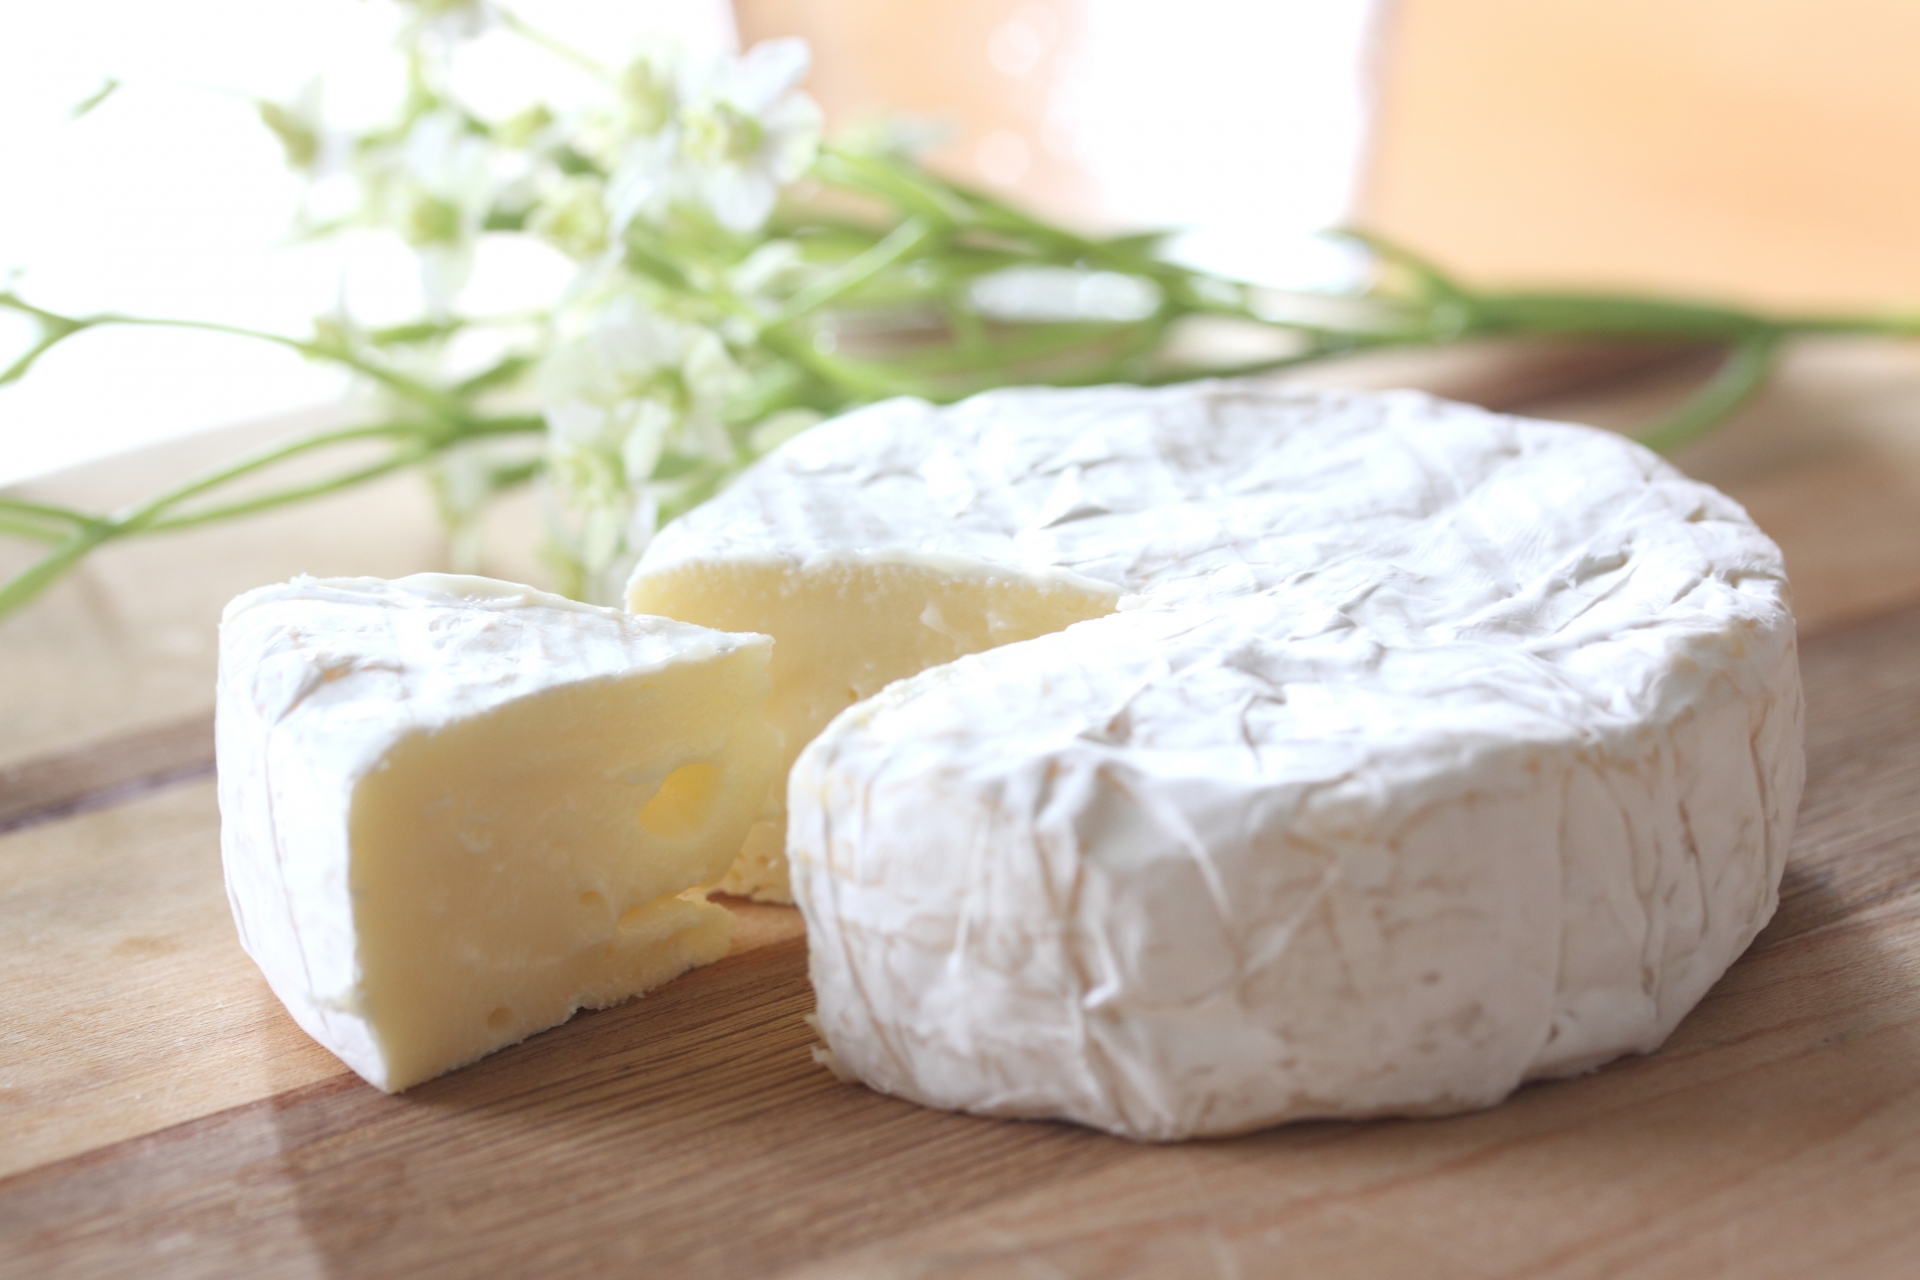 カマンベールチーズを美味しく食べる 皮も食べるの 実はやみつきに 知識の泉